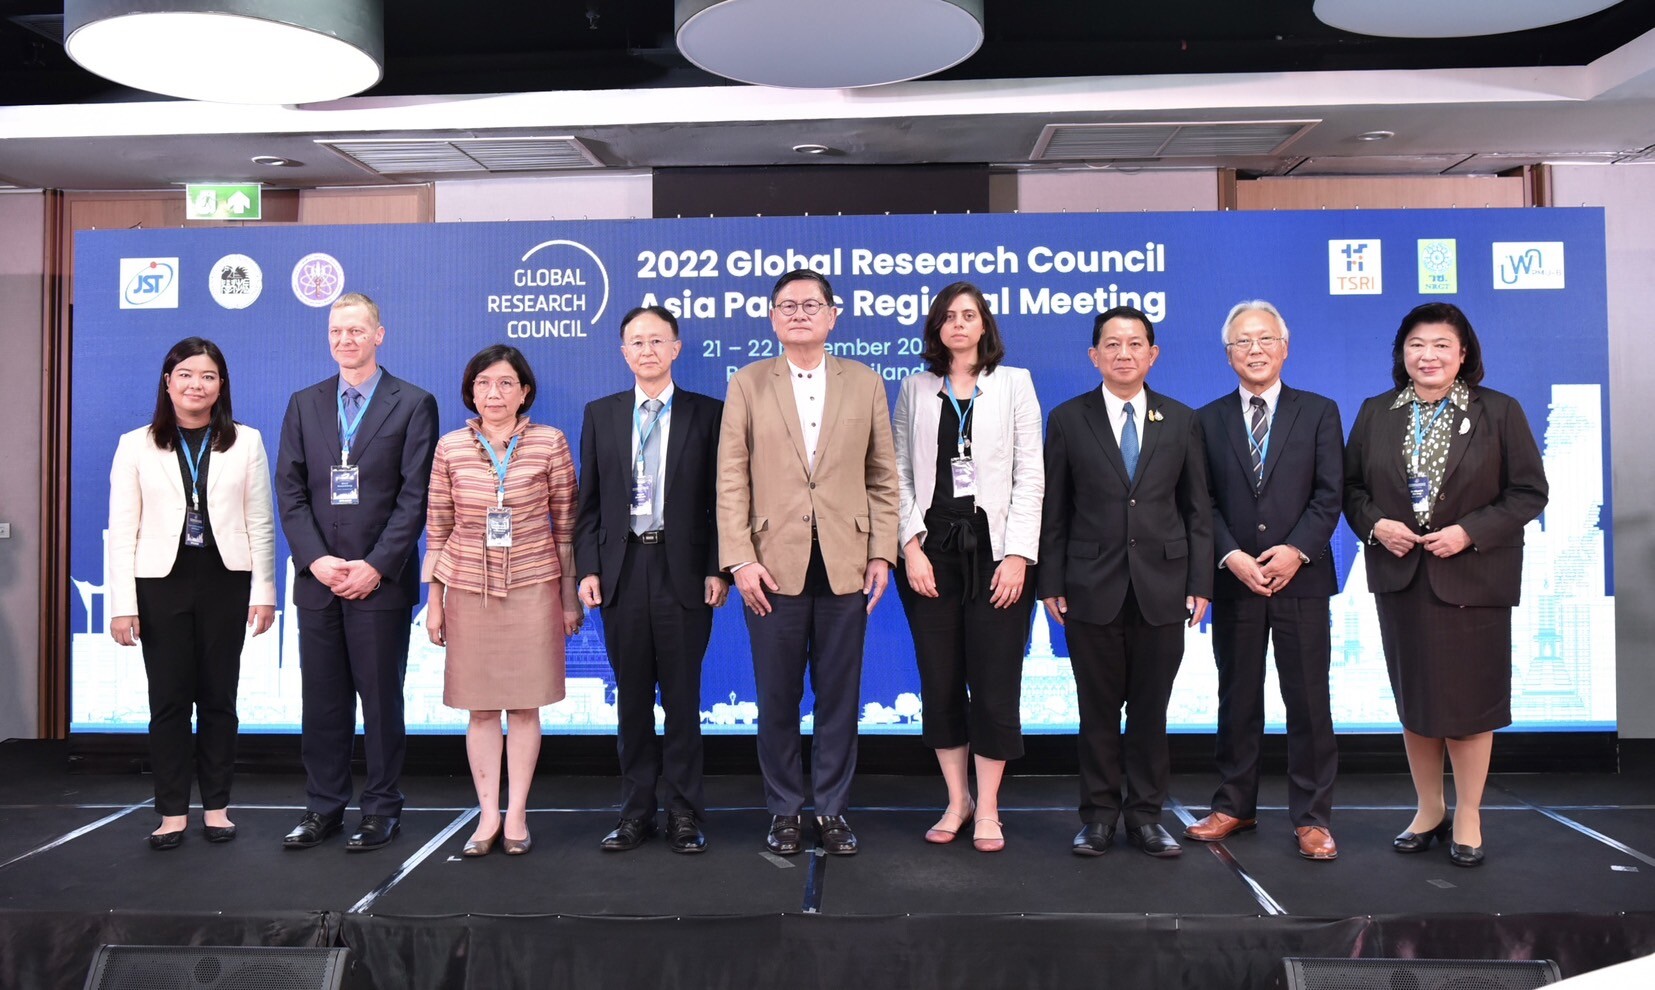 วช. ร่วมกับ สกสว. บพค. JST และ JSPS จัดประชุมสภาวิจัยโลก (Global Research Counil:GRC) ภูมิภาคเอเชียแปซิฟิก ประจำปี 2022